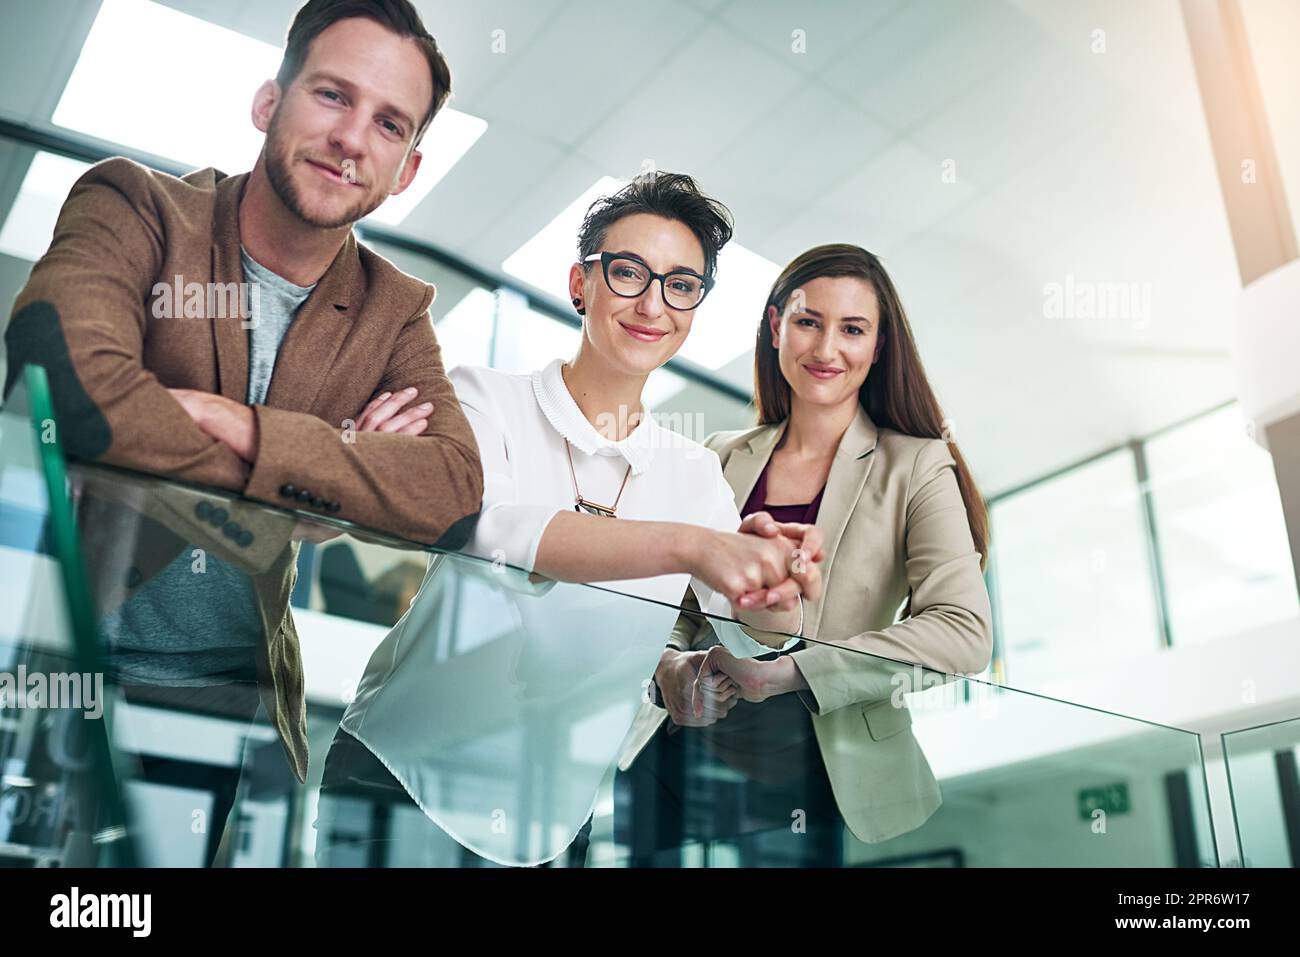 Weve ha ottenuto successo coperto. Ritratto di un gruppo di colleghi che si appoggiano su una ringhiera insieme in un grande ufficio moderno. Foto Stock